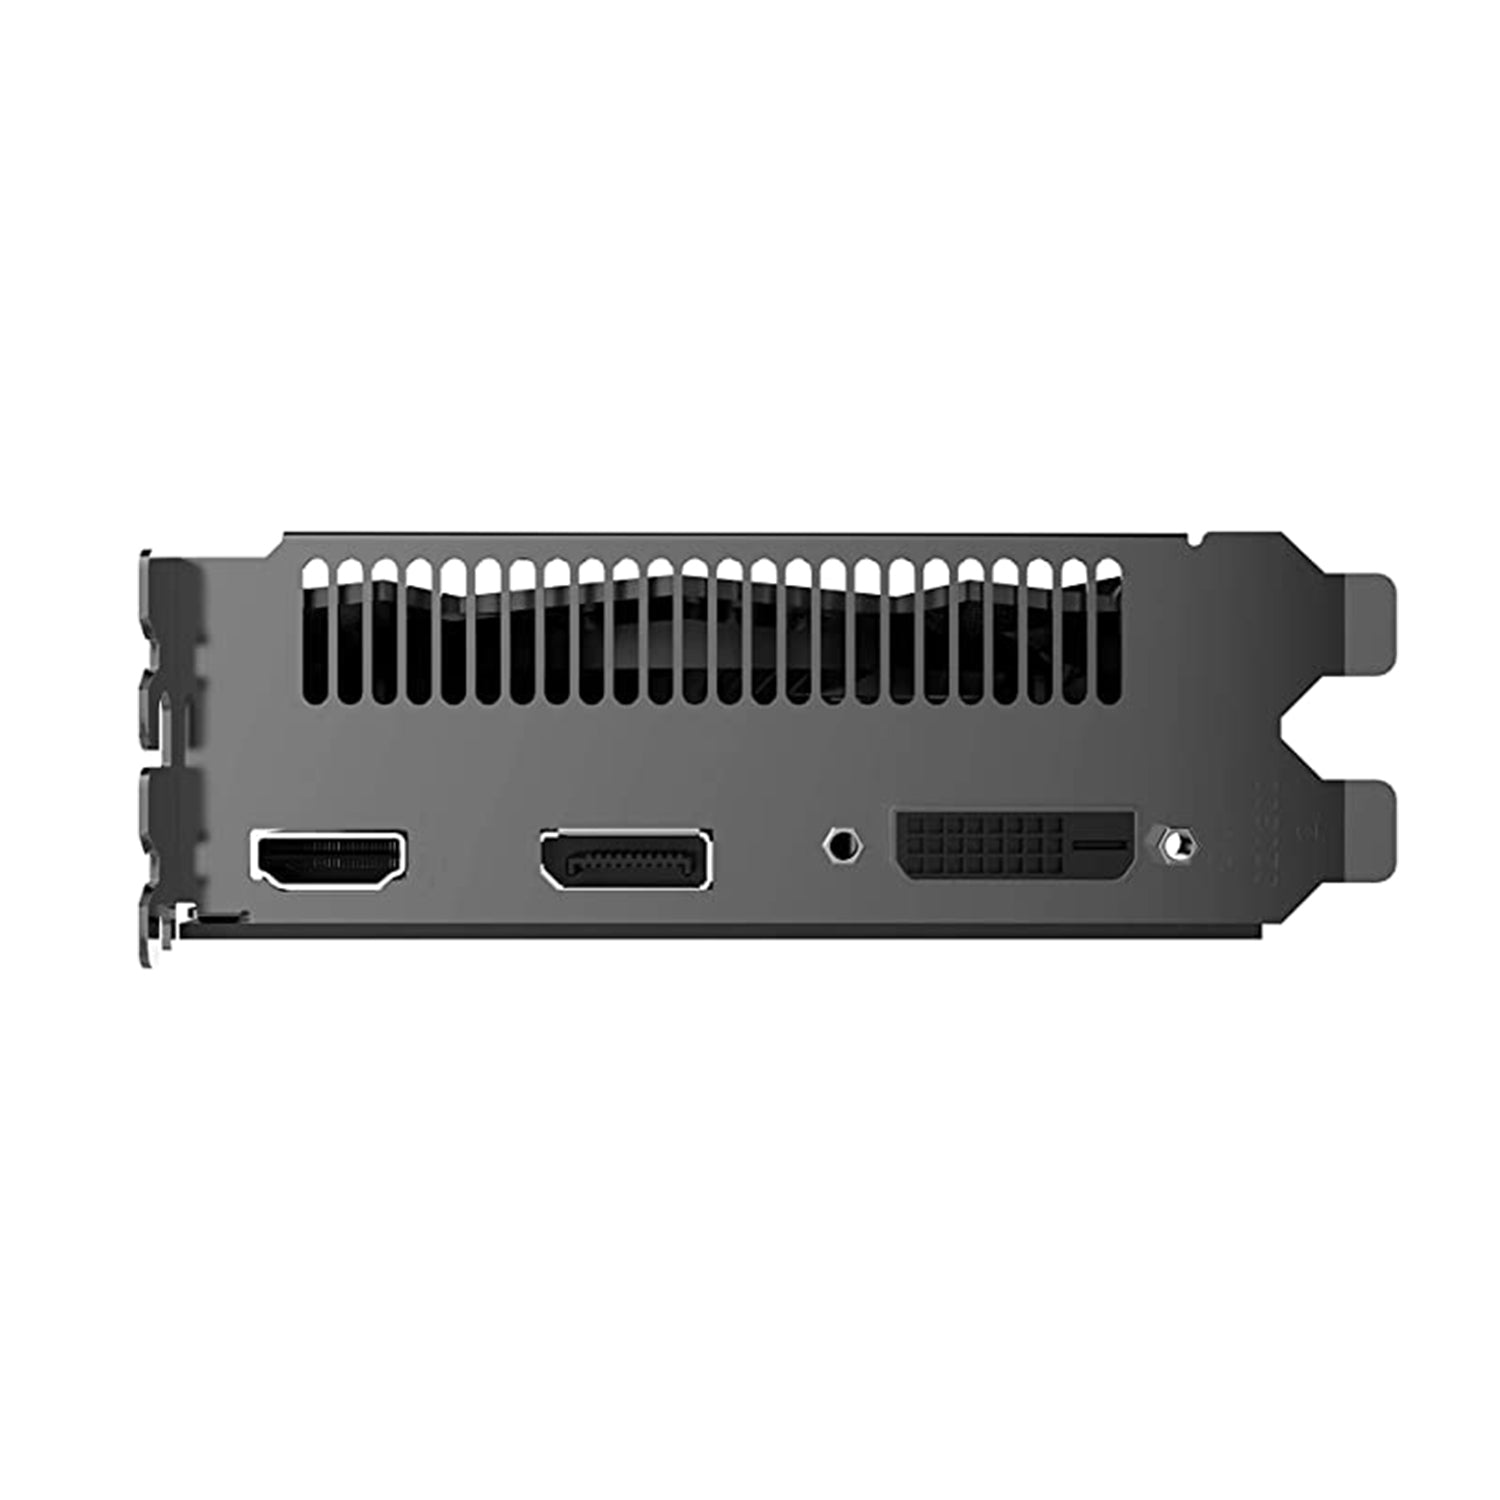 ZOTAC Gaming GeForce GTX 1650 Graphics Card| 4GB GDDR6, PCI Express 3.0 Video Card, DisplayPort 1.4, HDMI 2.0 (ZT-T16520F-10L)